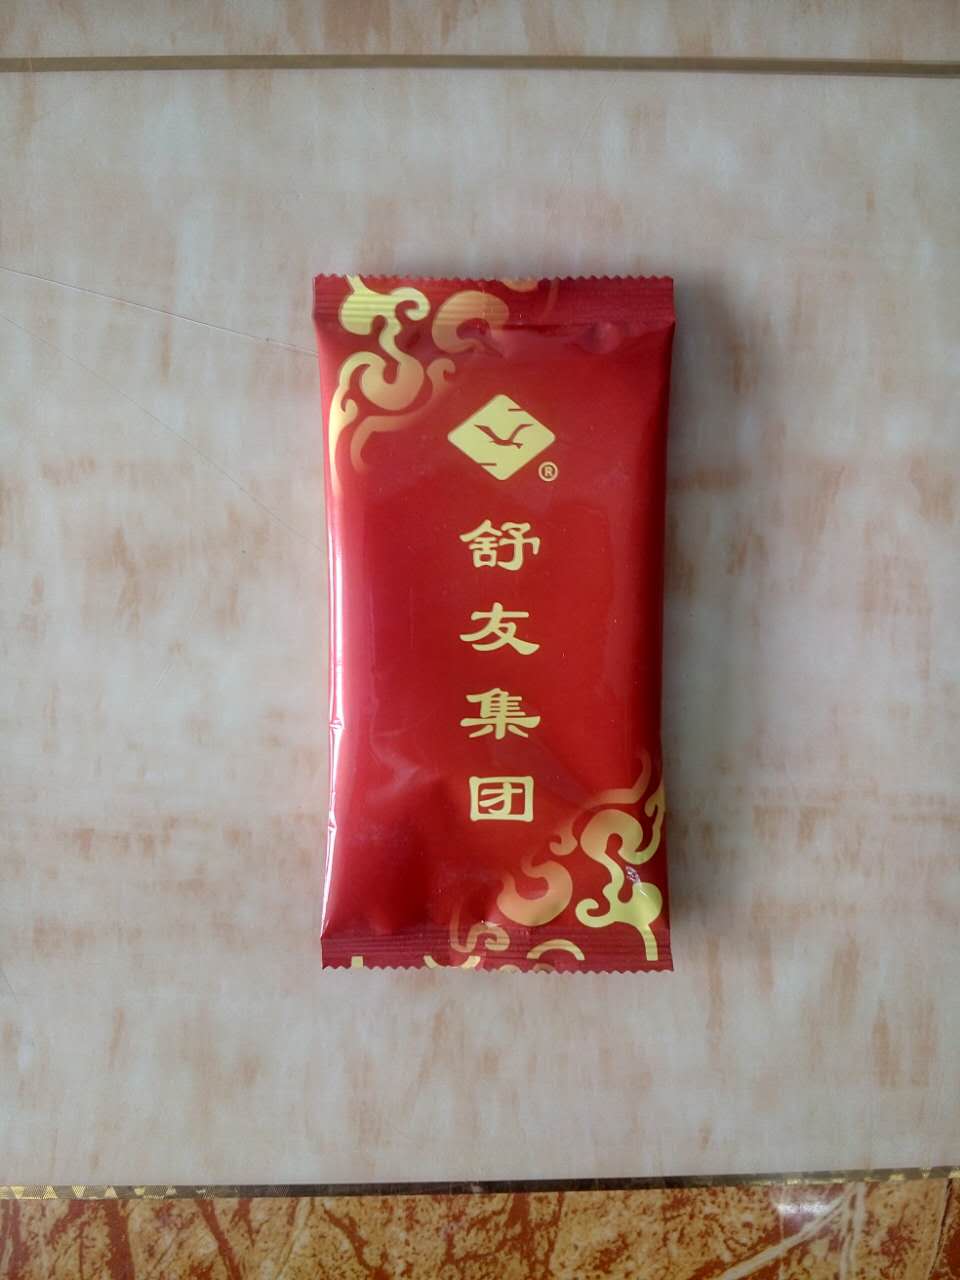 上海湿巾生产厂家。上海湿巾定制、广告湿巾定做